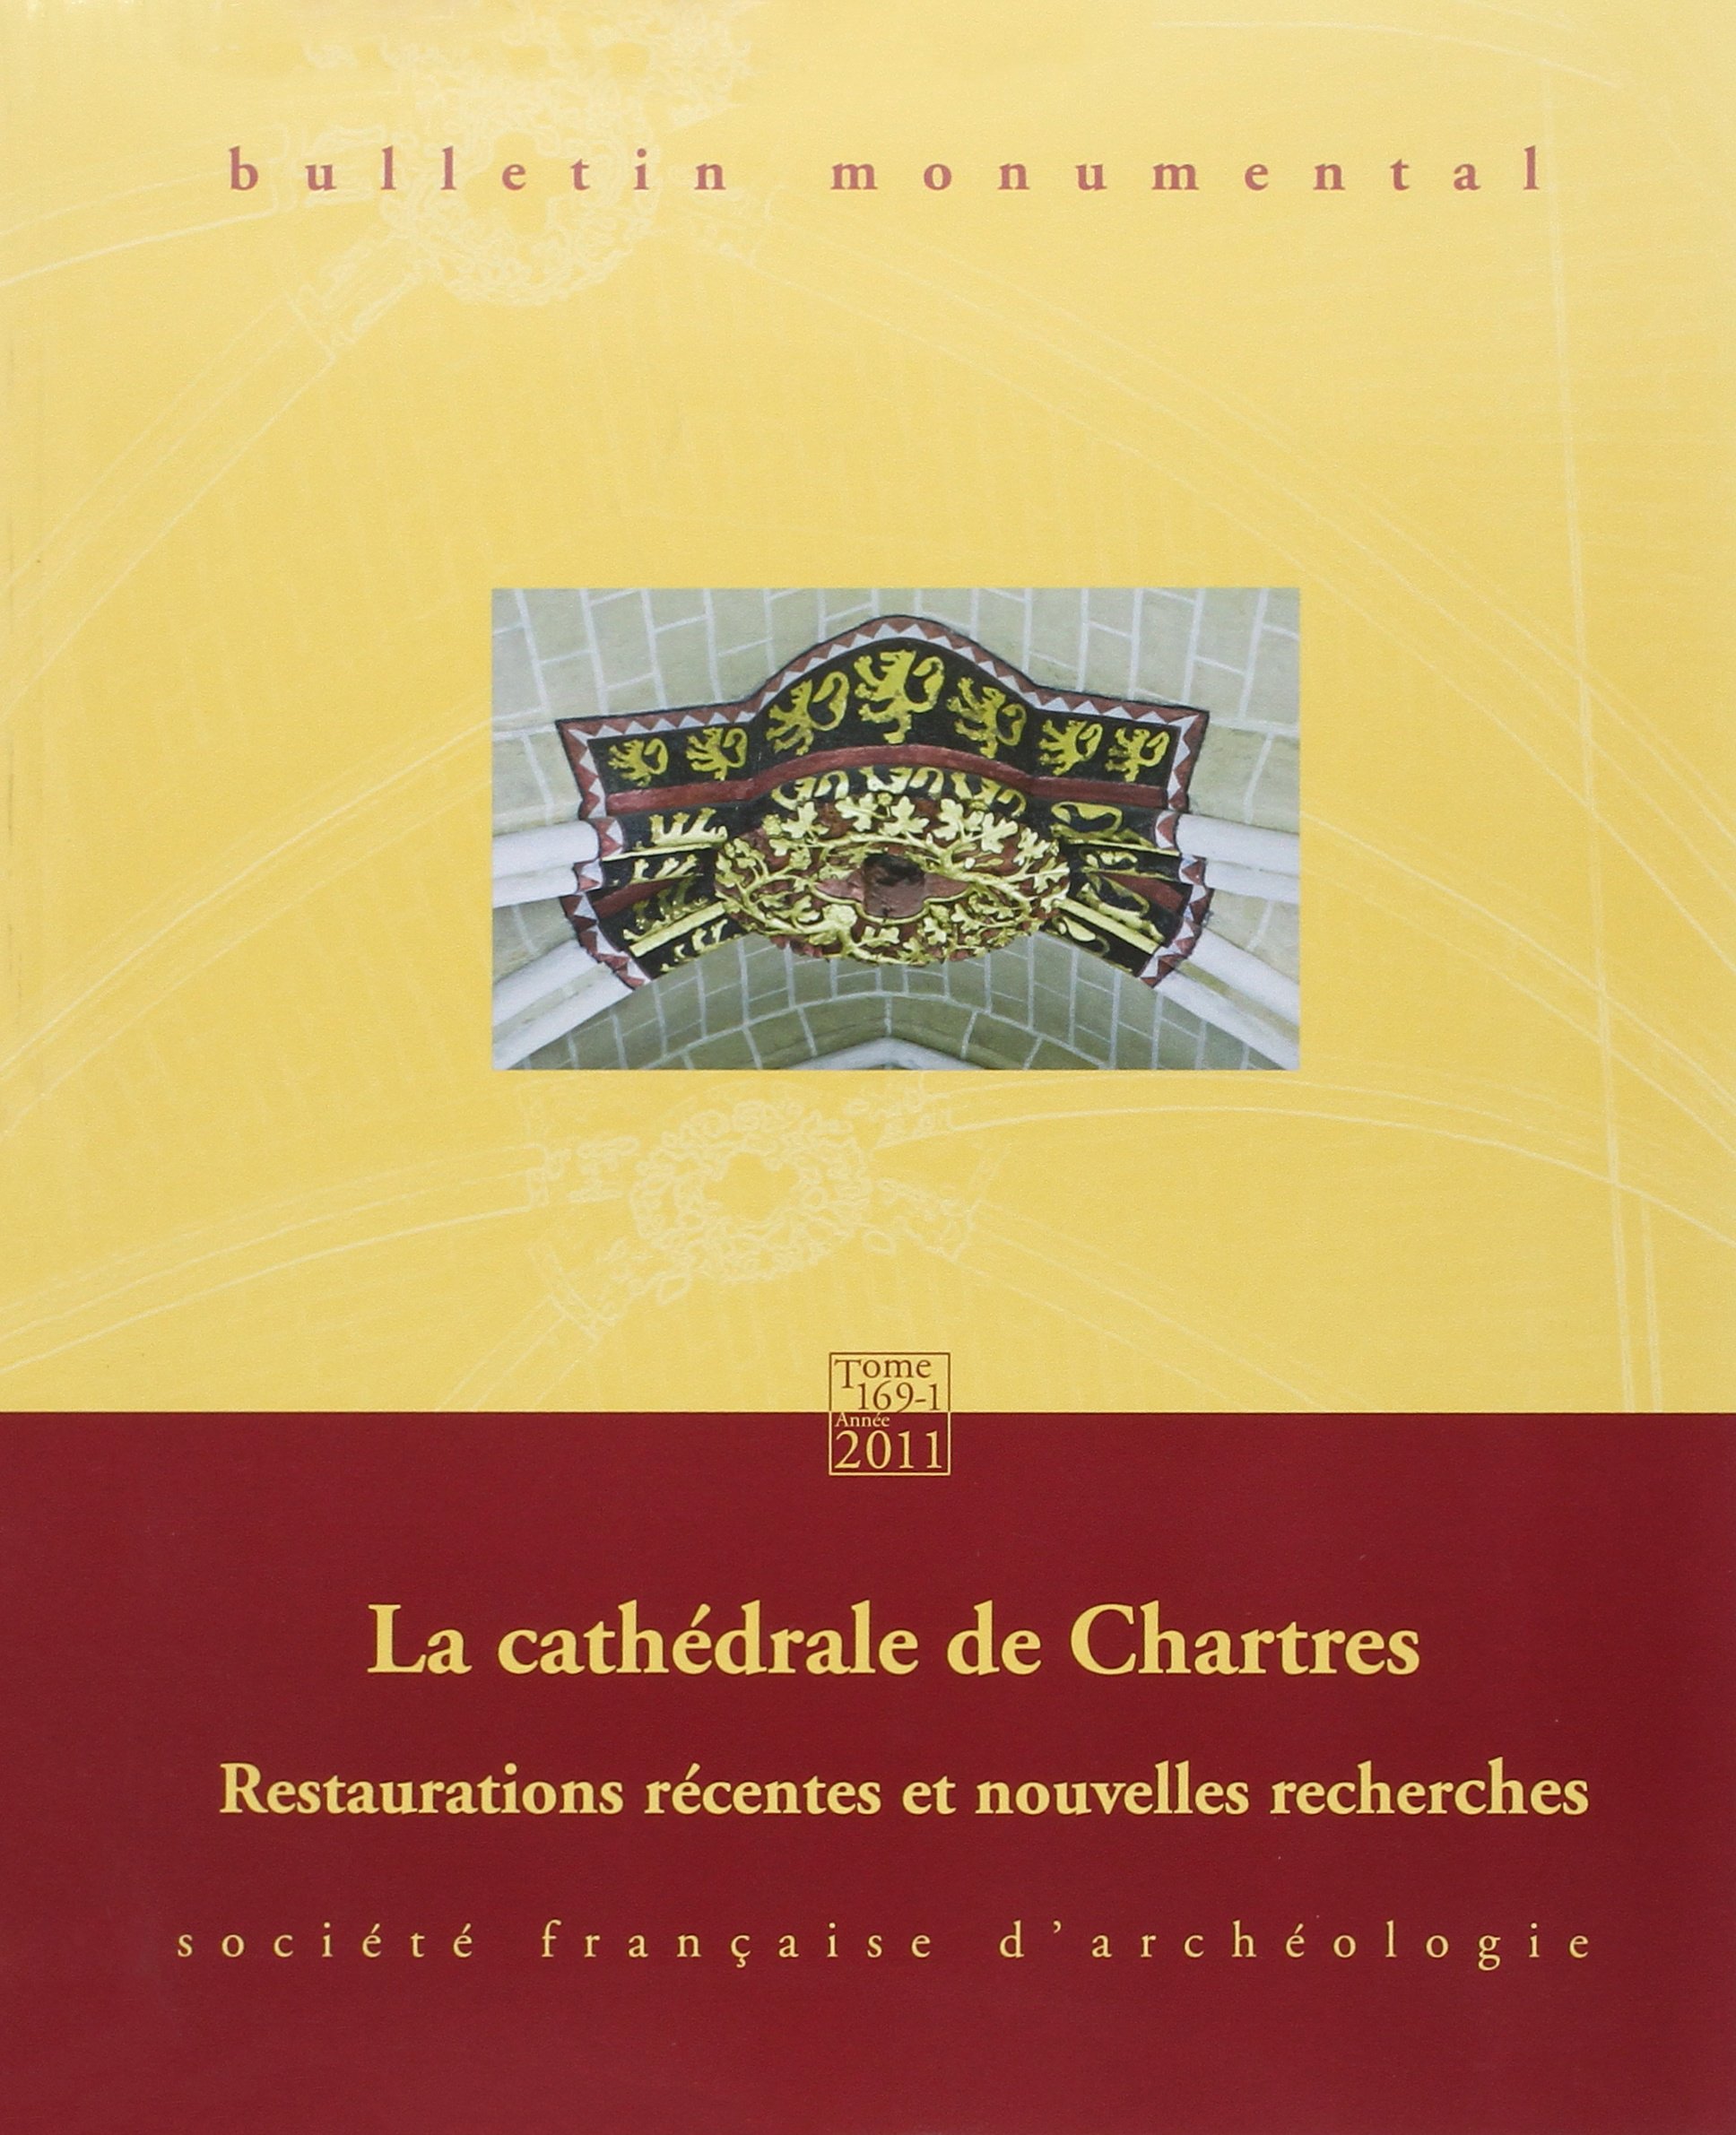 169-1, 2011. La cathédrale de Chartres. Restaurations récentes et nouvelles recherches.